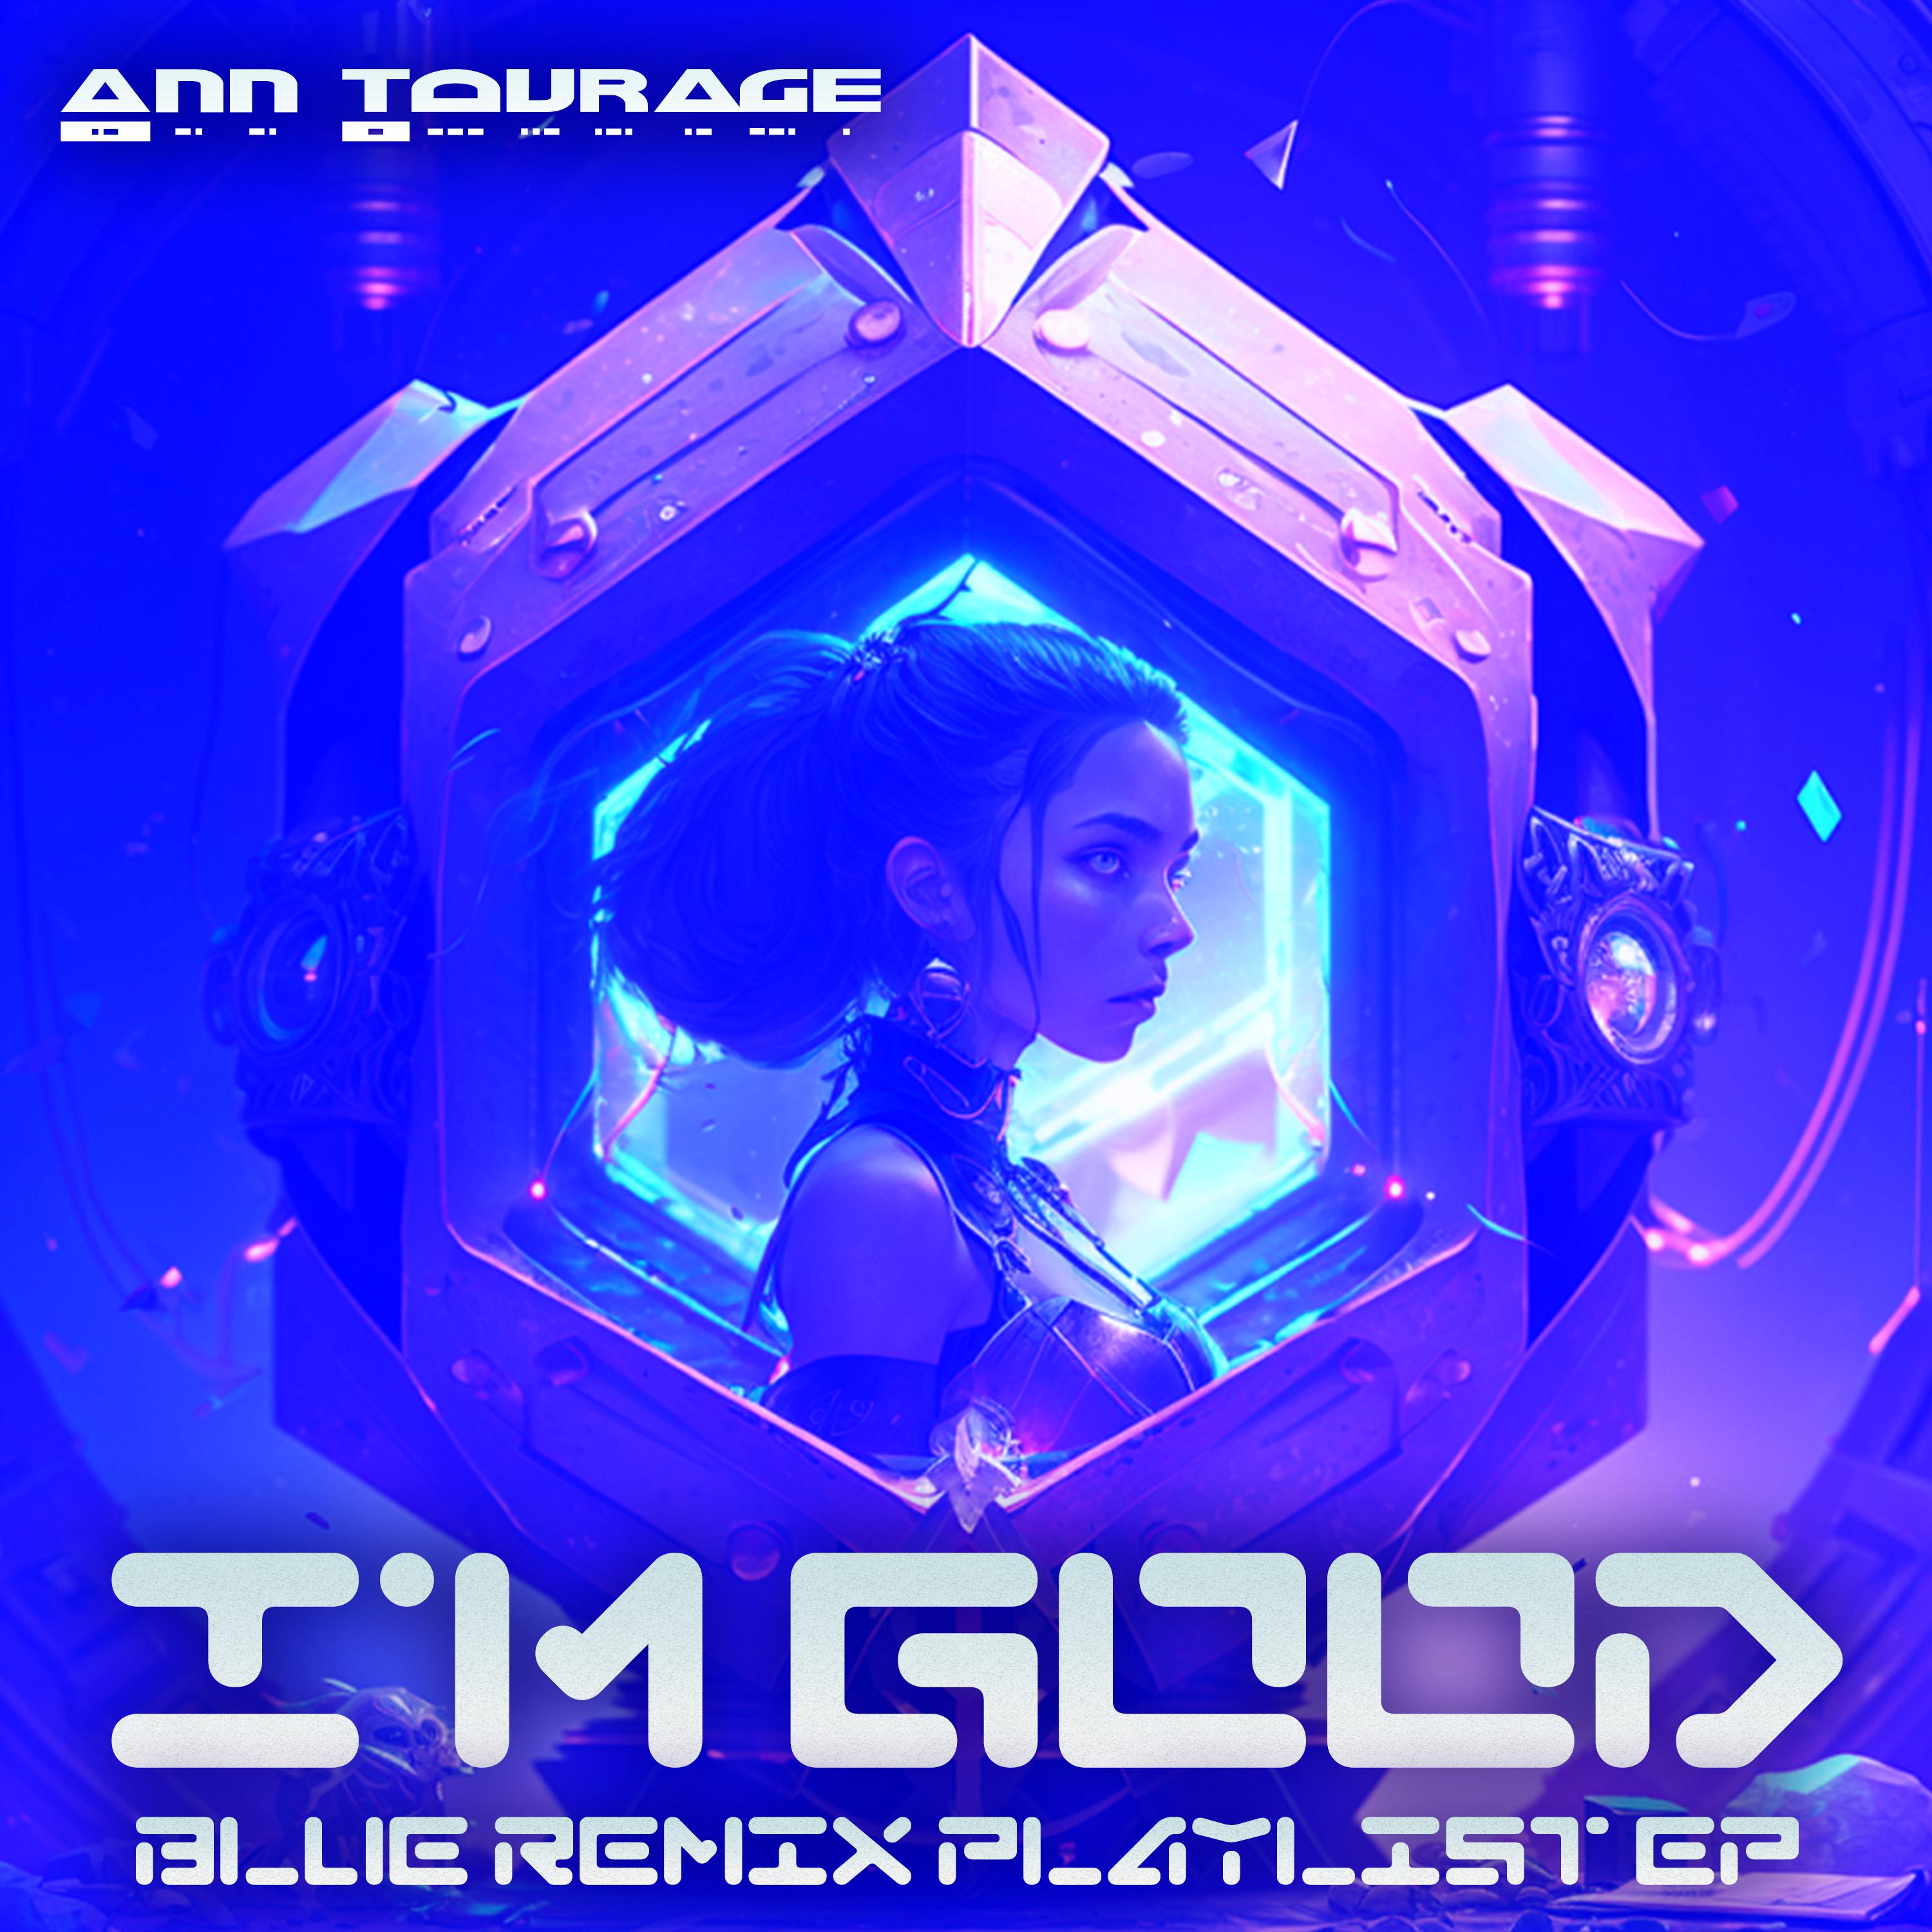 Ann Tourage - I'm Good (Iker Sadaba 80s Hits Remix Instrumental)